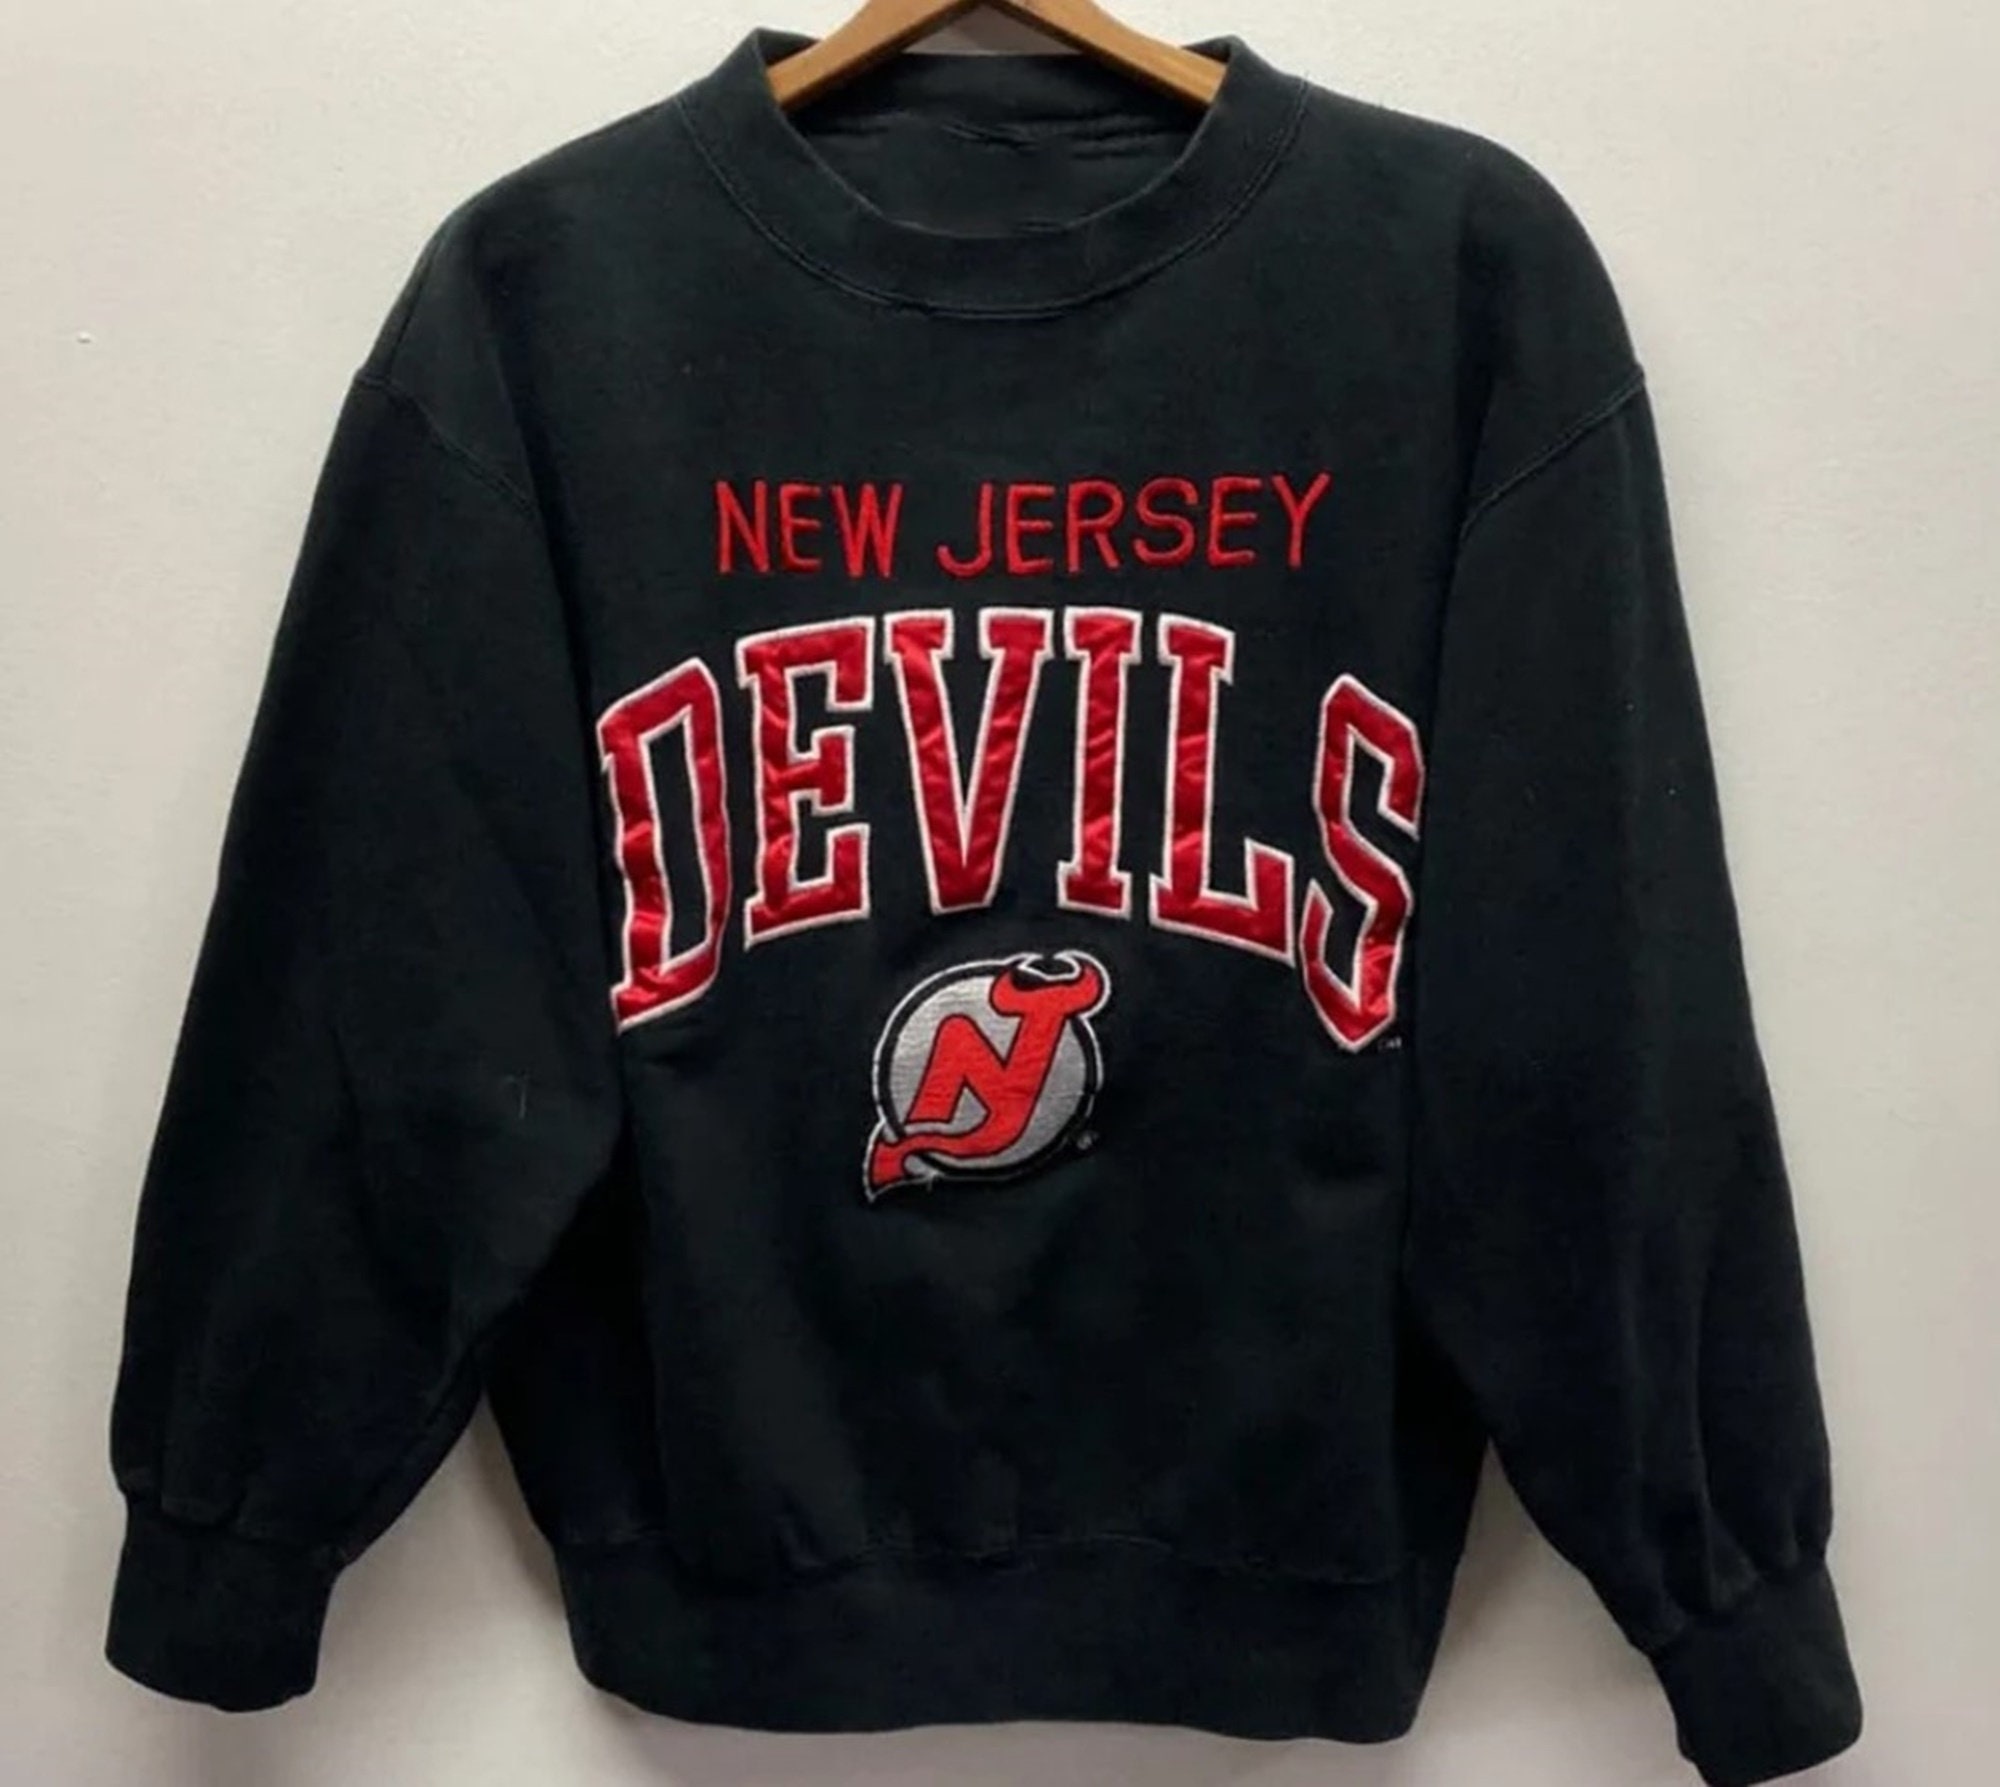 New Jersey Devils Jerseys, Devils Jersey Deals, Devils Breakaway